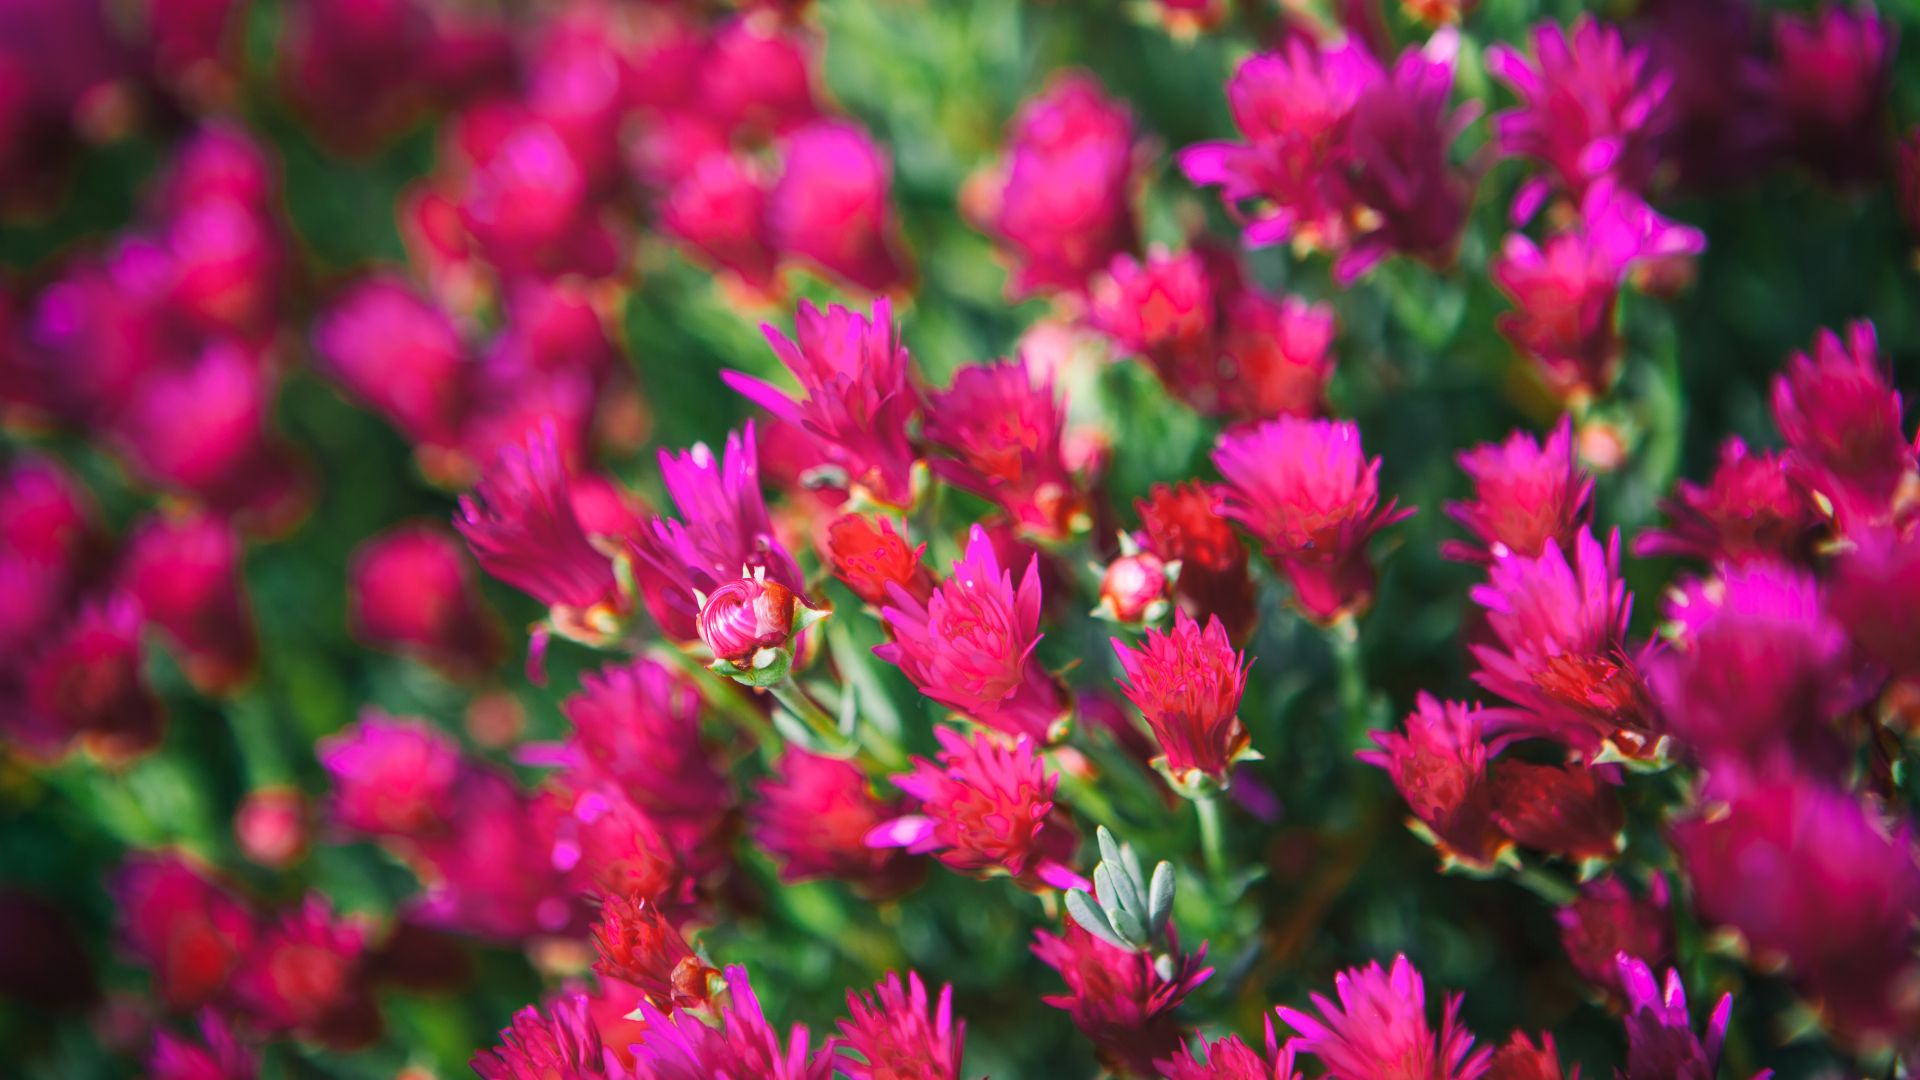 Полевые цветы, 5k, 4k, луга, цветы, розовый, Wildflowers, 5k, 4k wallpaper, meadows, flowers, pink (horizontal)